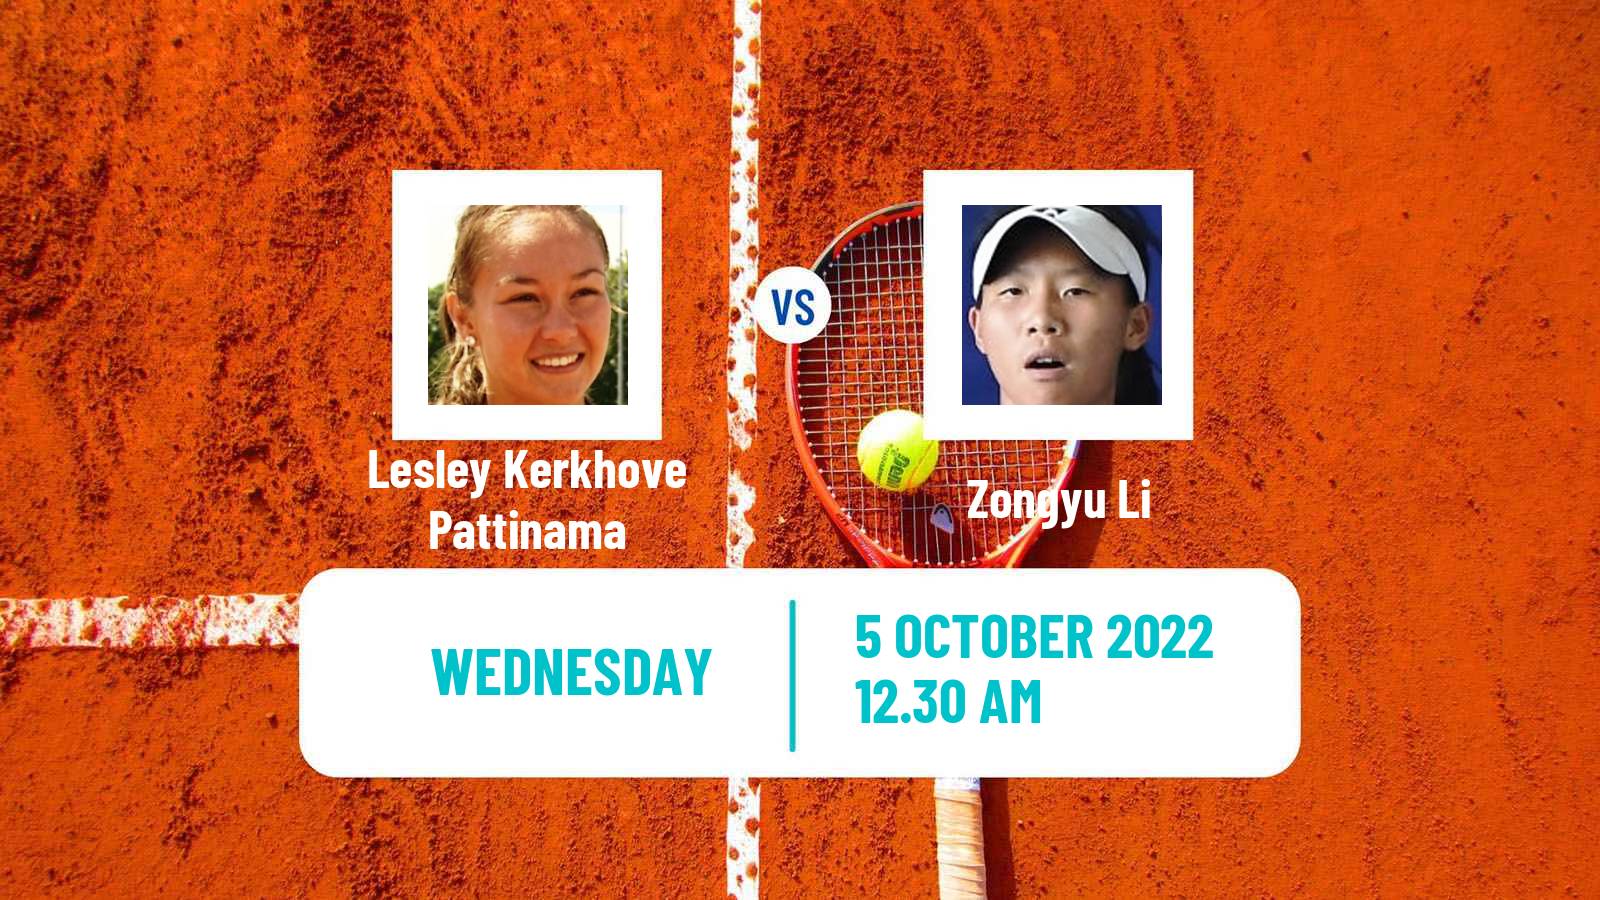 Tennis ITF Tournaments Lesley Kerkhove Pattinama - Zongyu Li